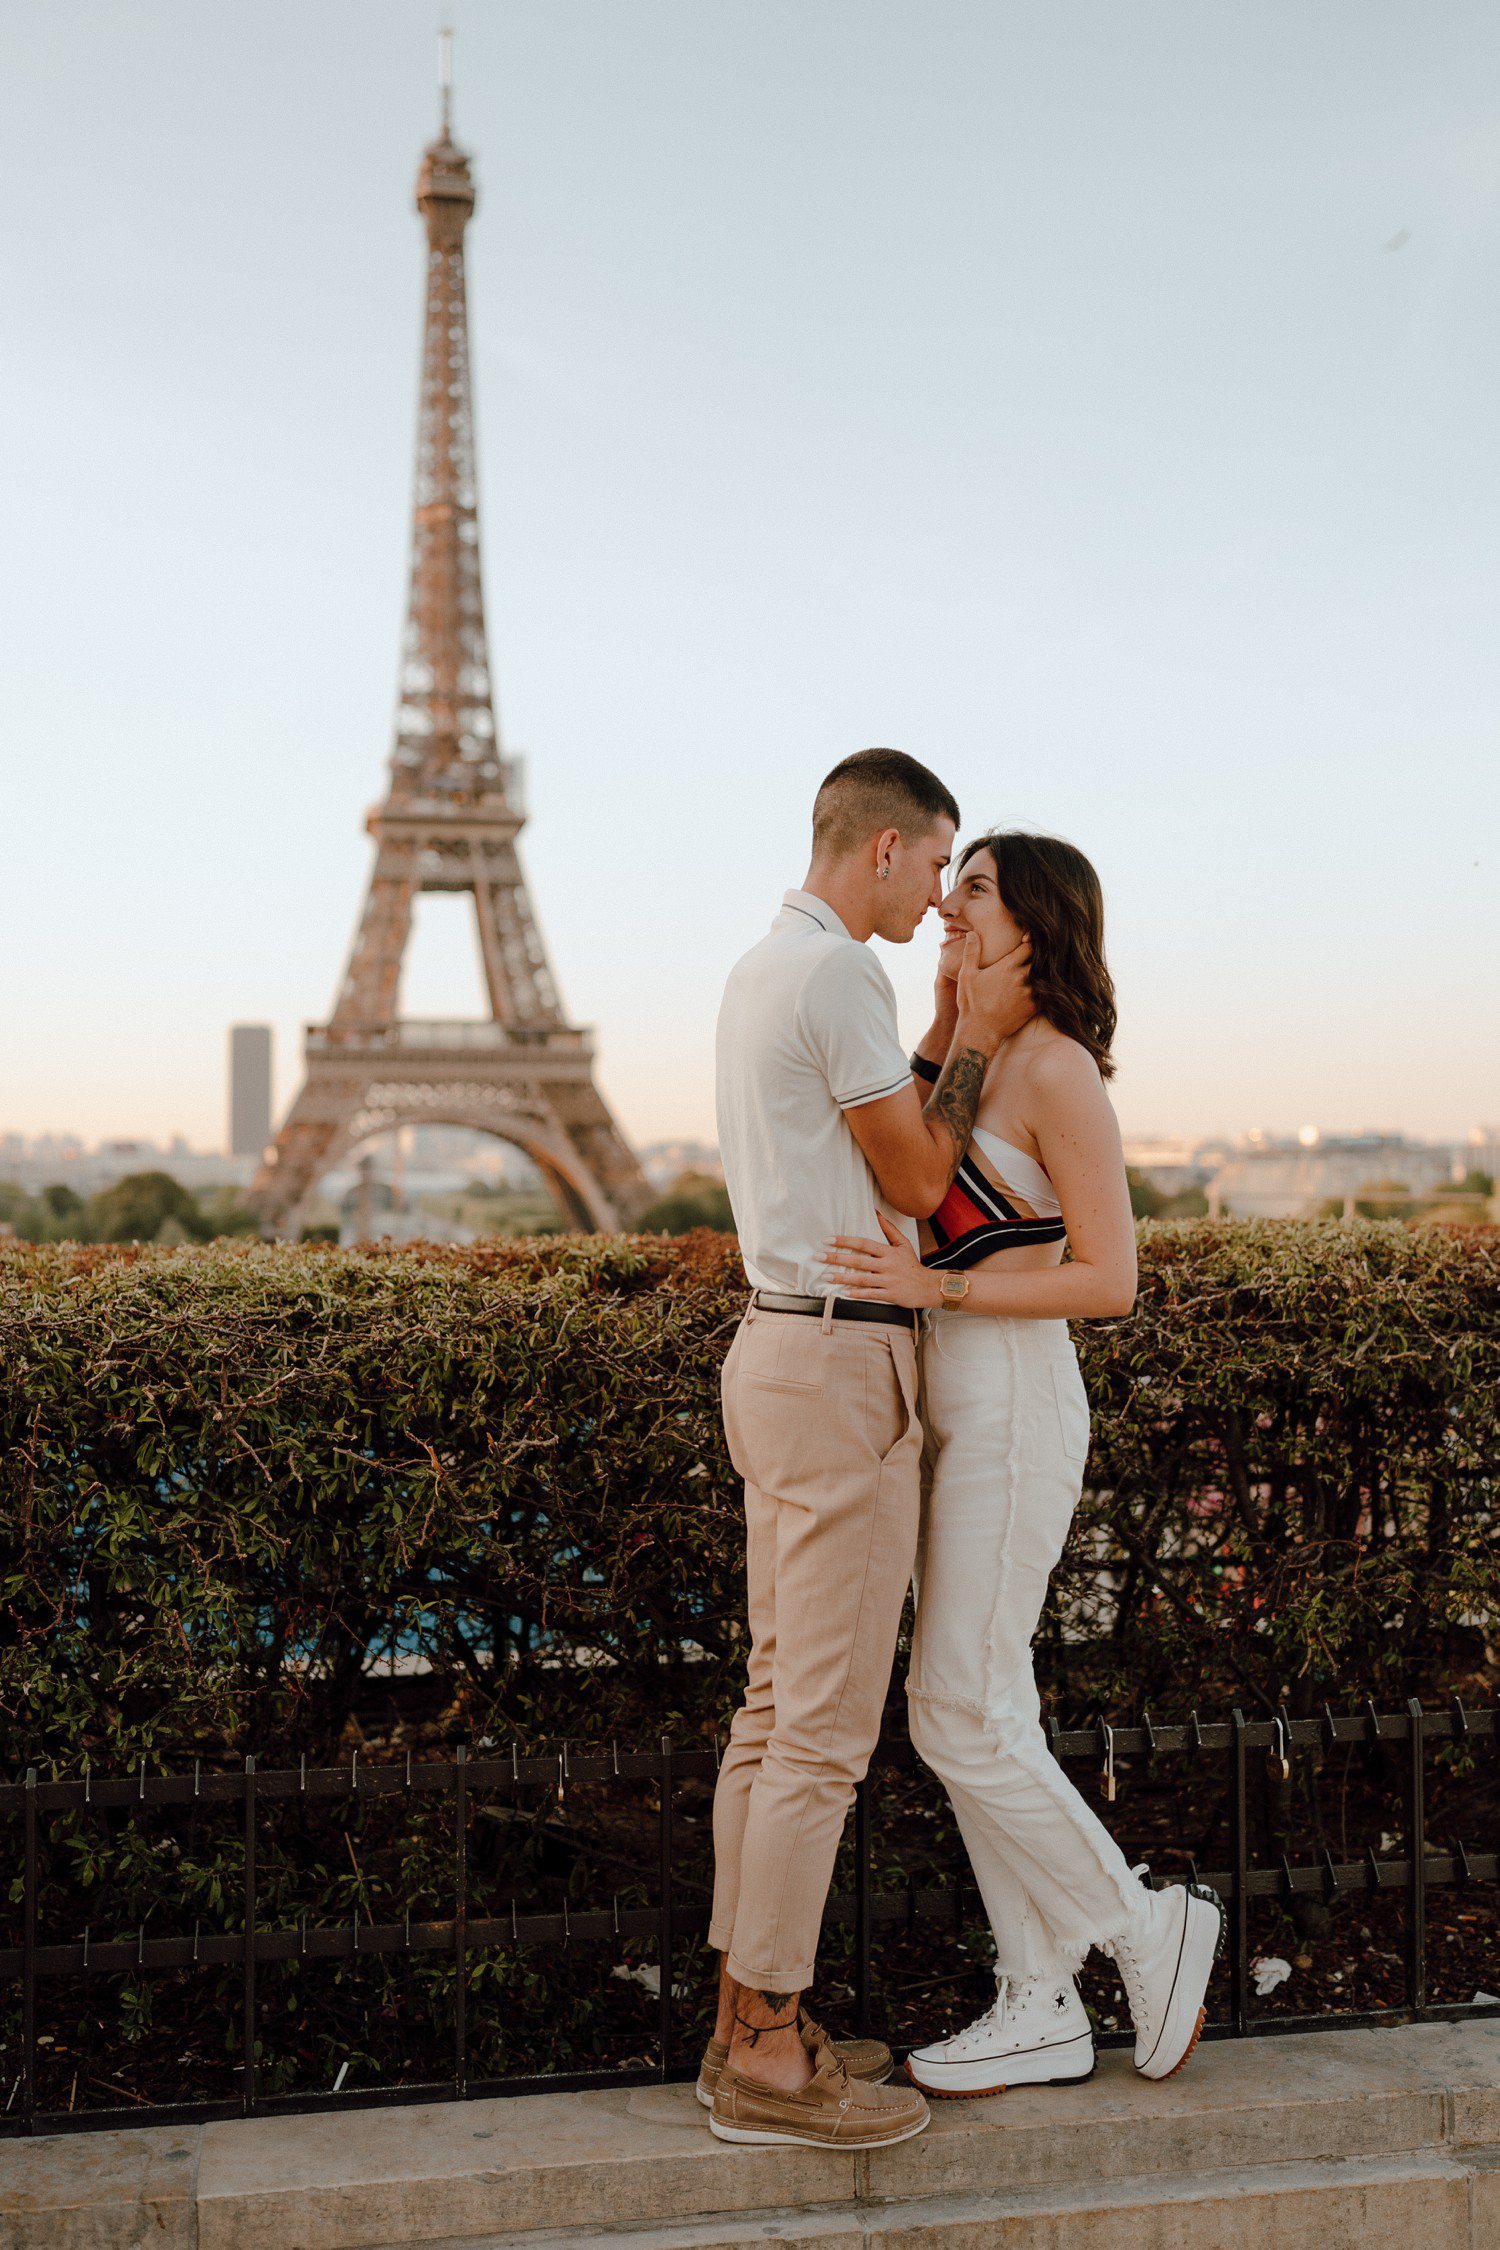 Sunrise Couple Photos at The Eiffel Tower